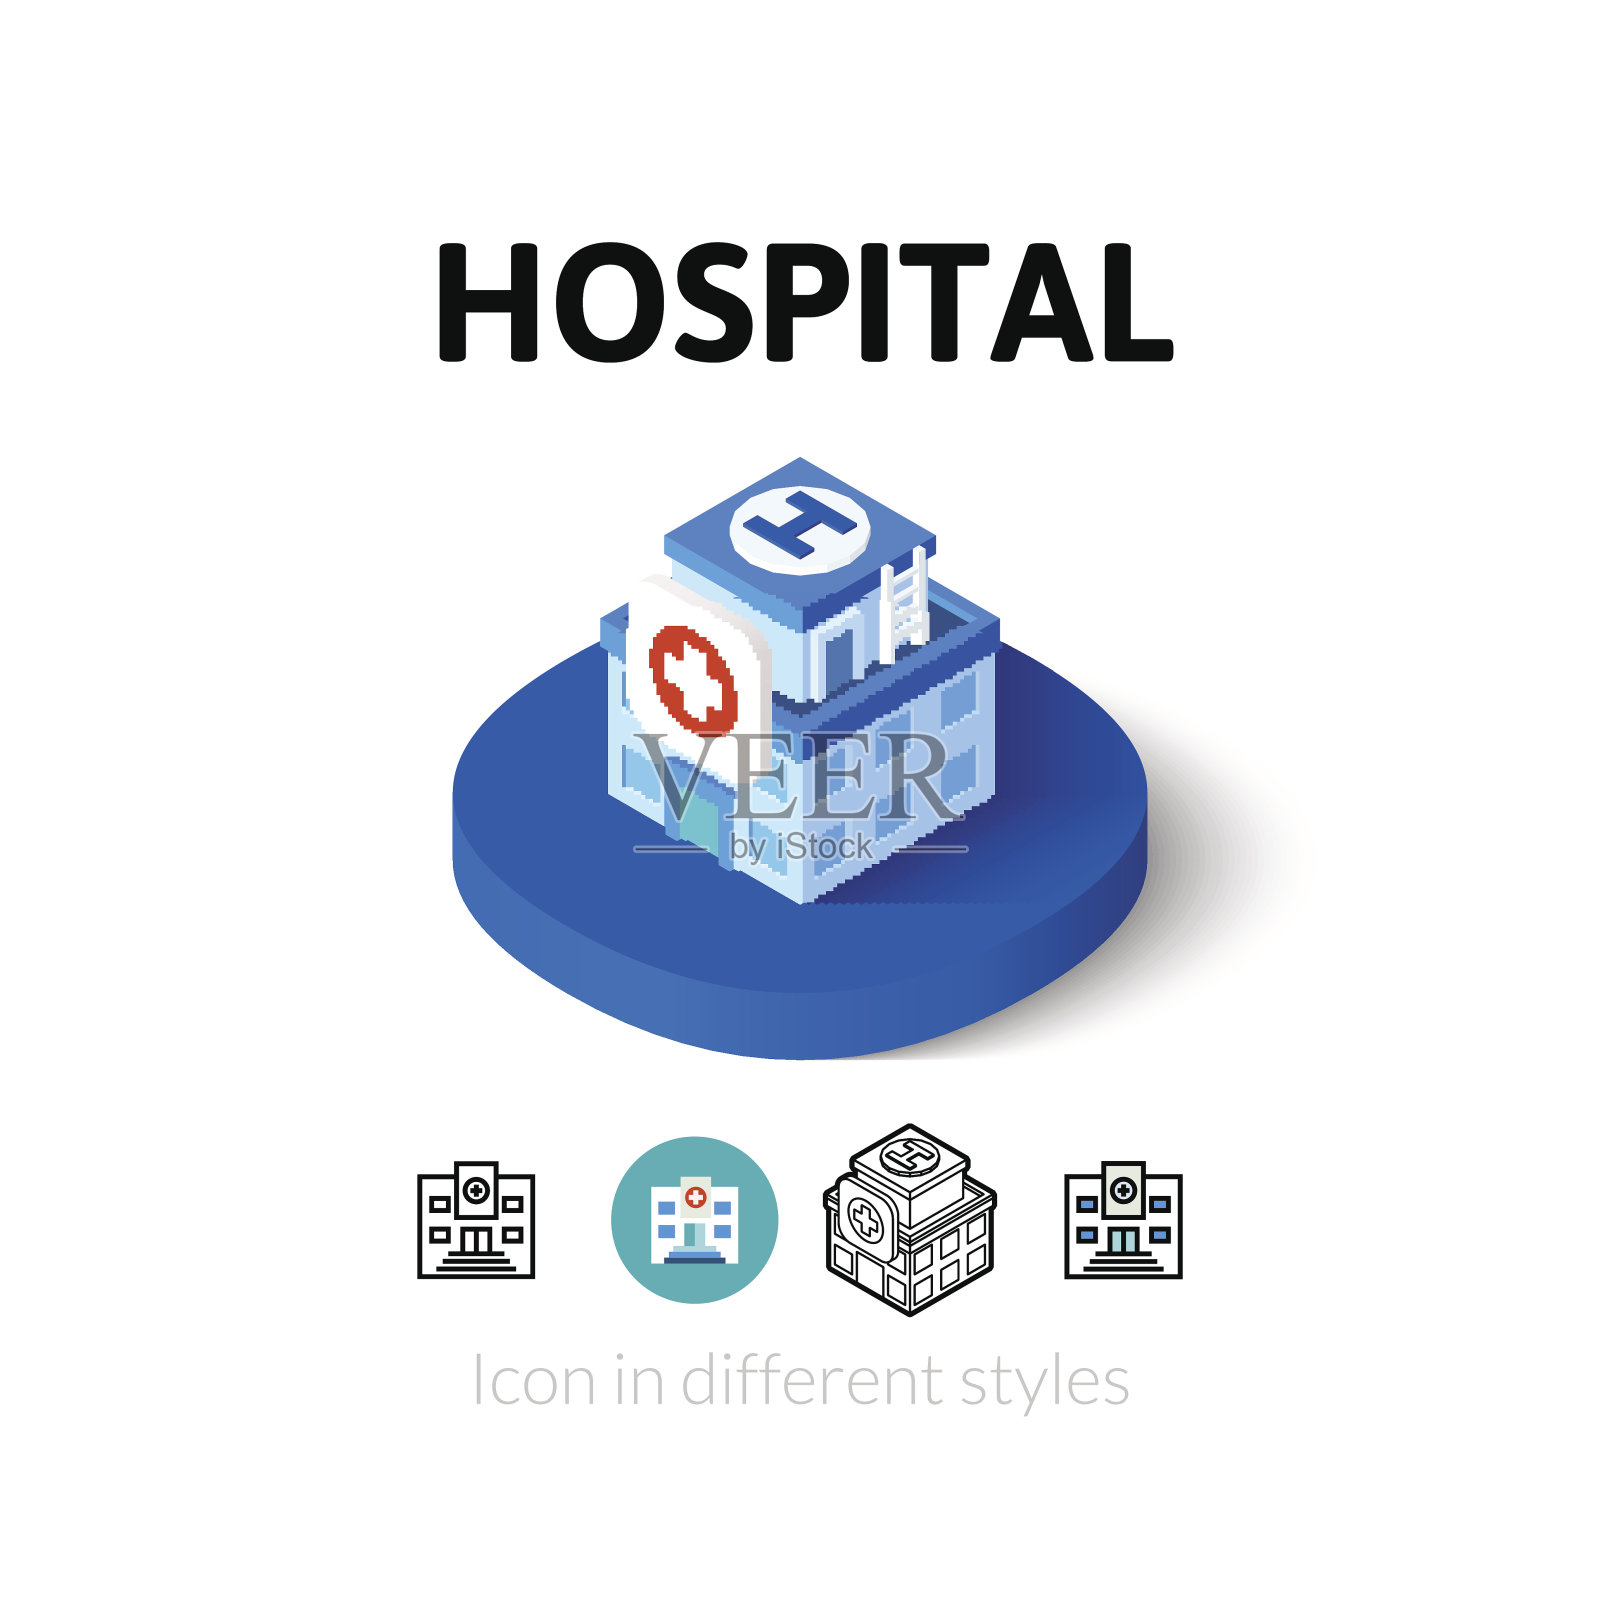 不同风格的医院图标图标素材